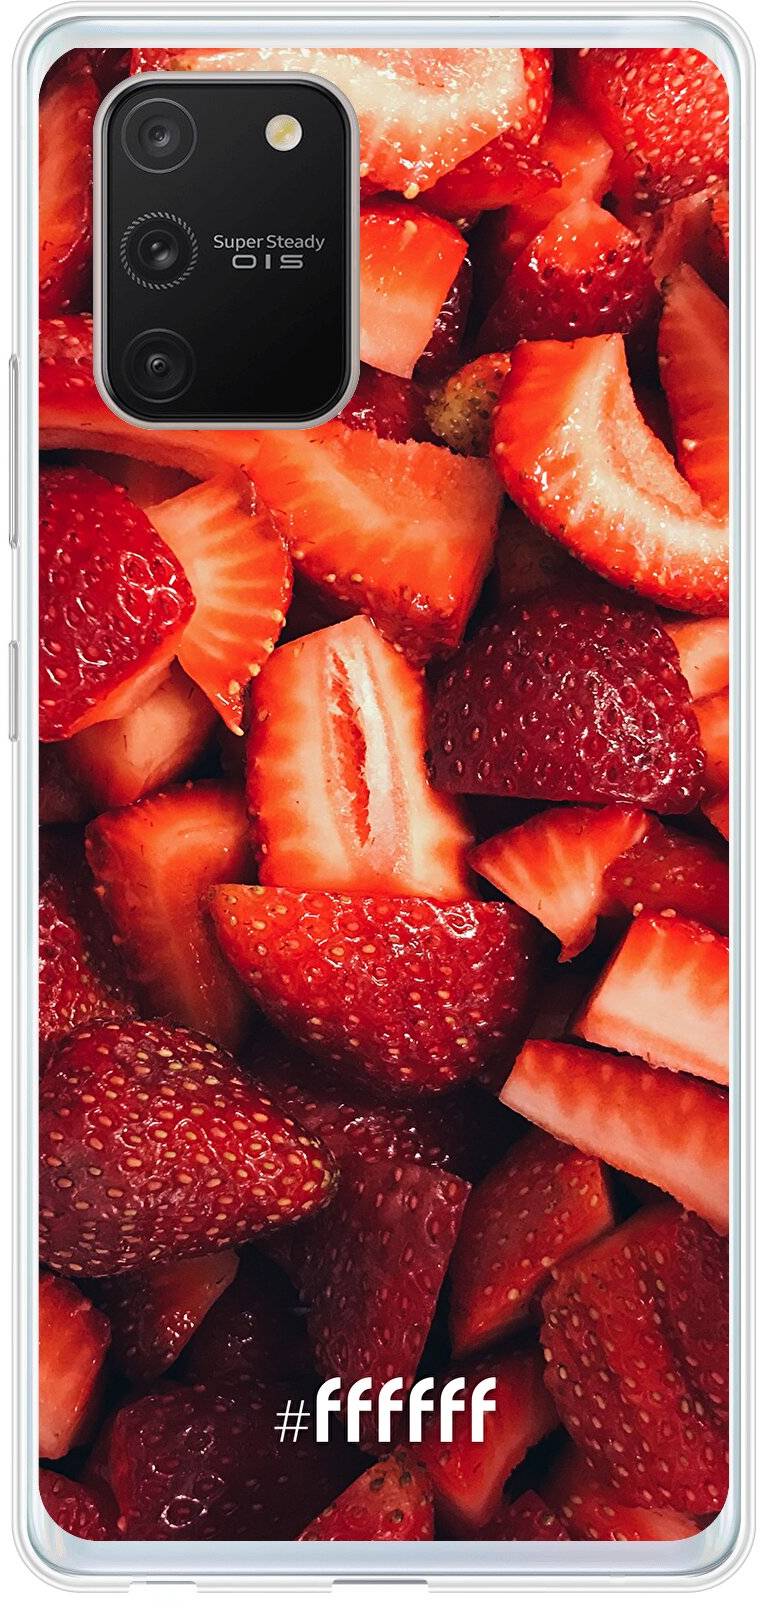 Strawberry Fields Galaxy S10 Lite